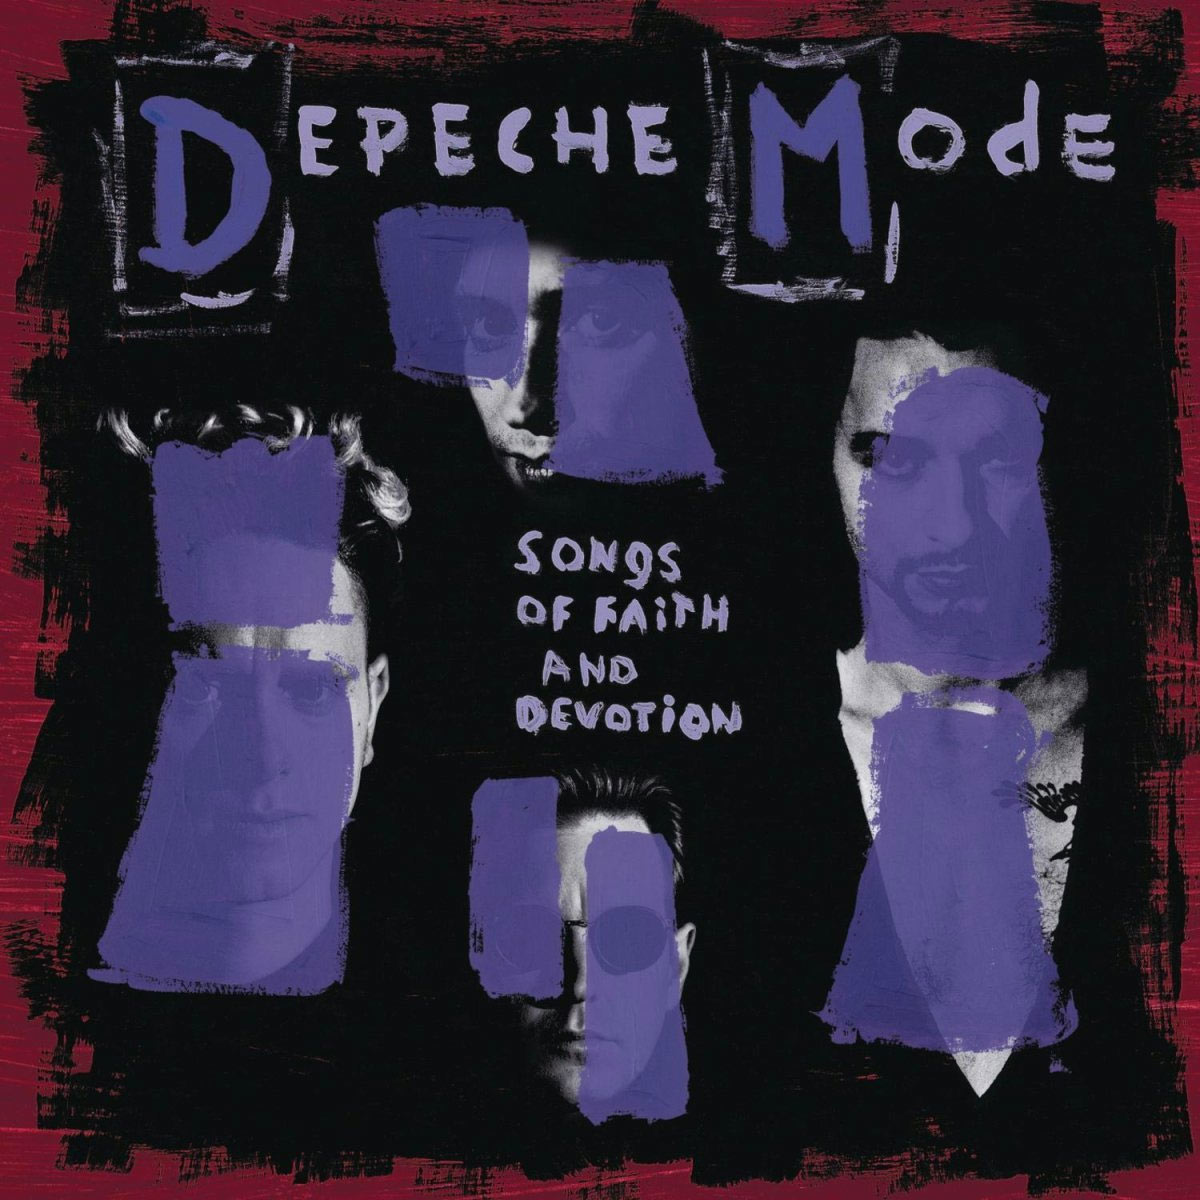 Depeche Mode: Every Album Ranked